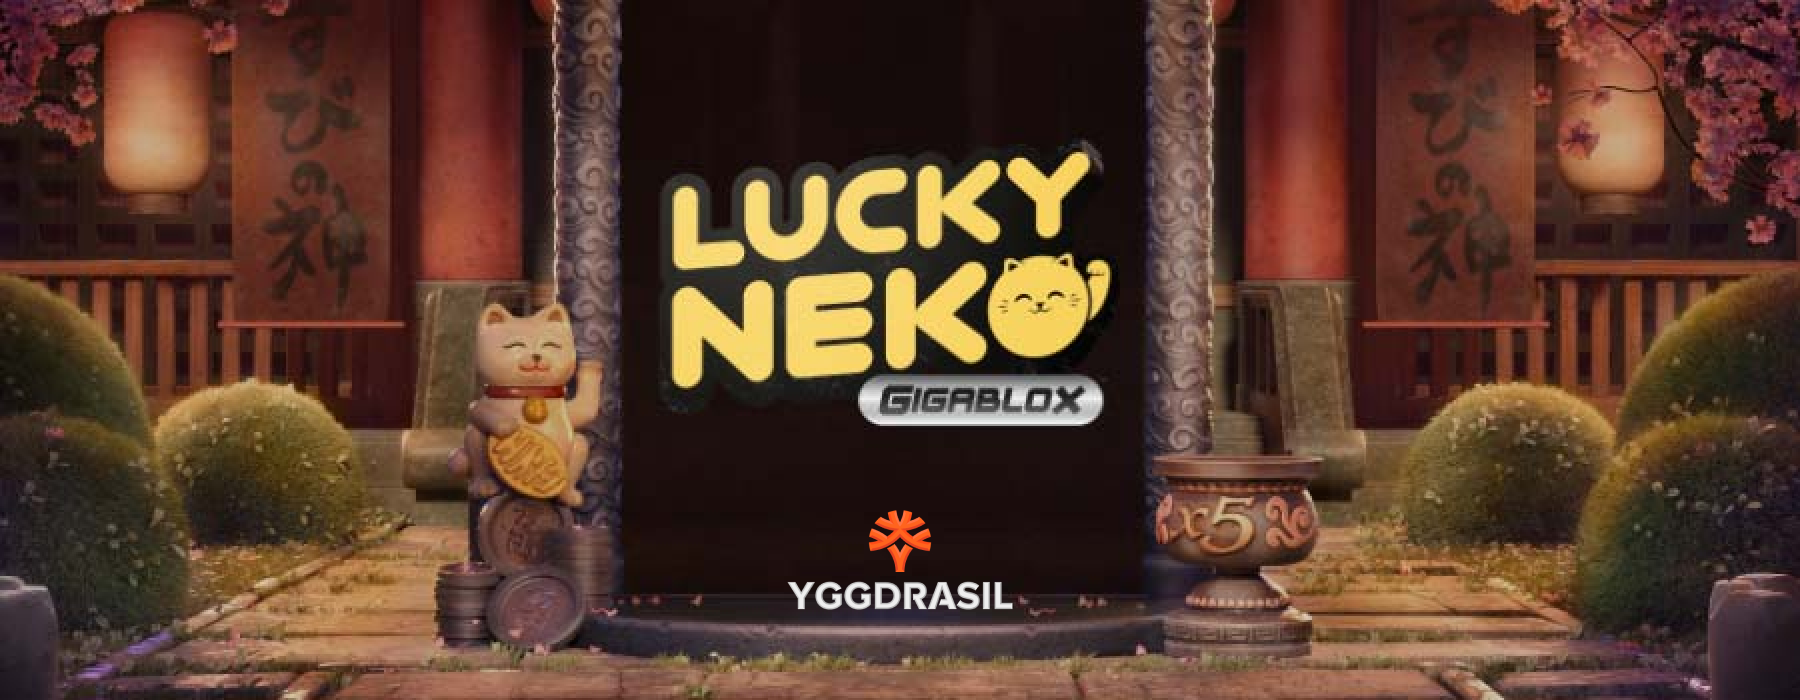 Lucky Neko Gigablox pinaagi sa Yggdrasil